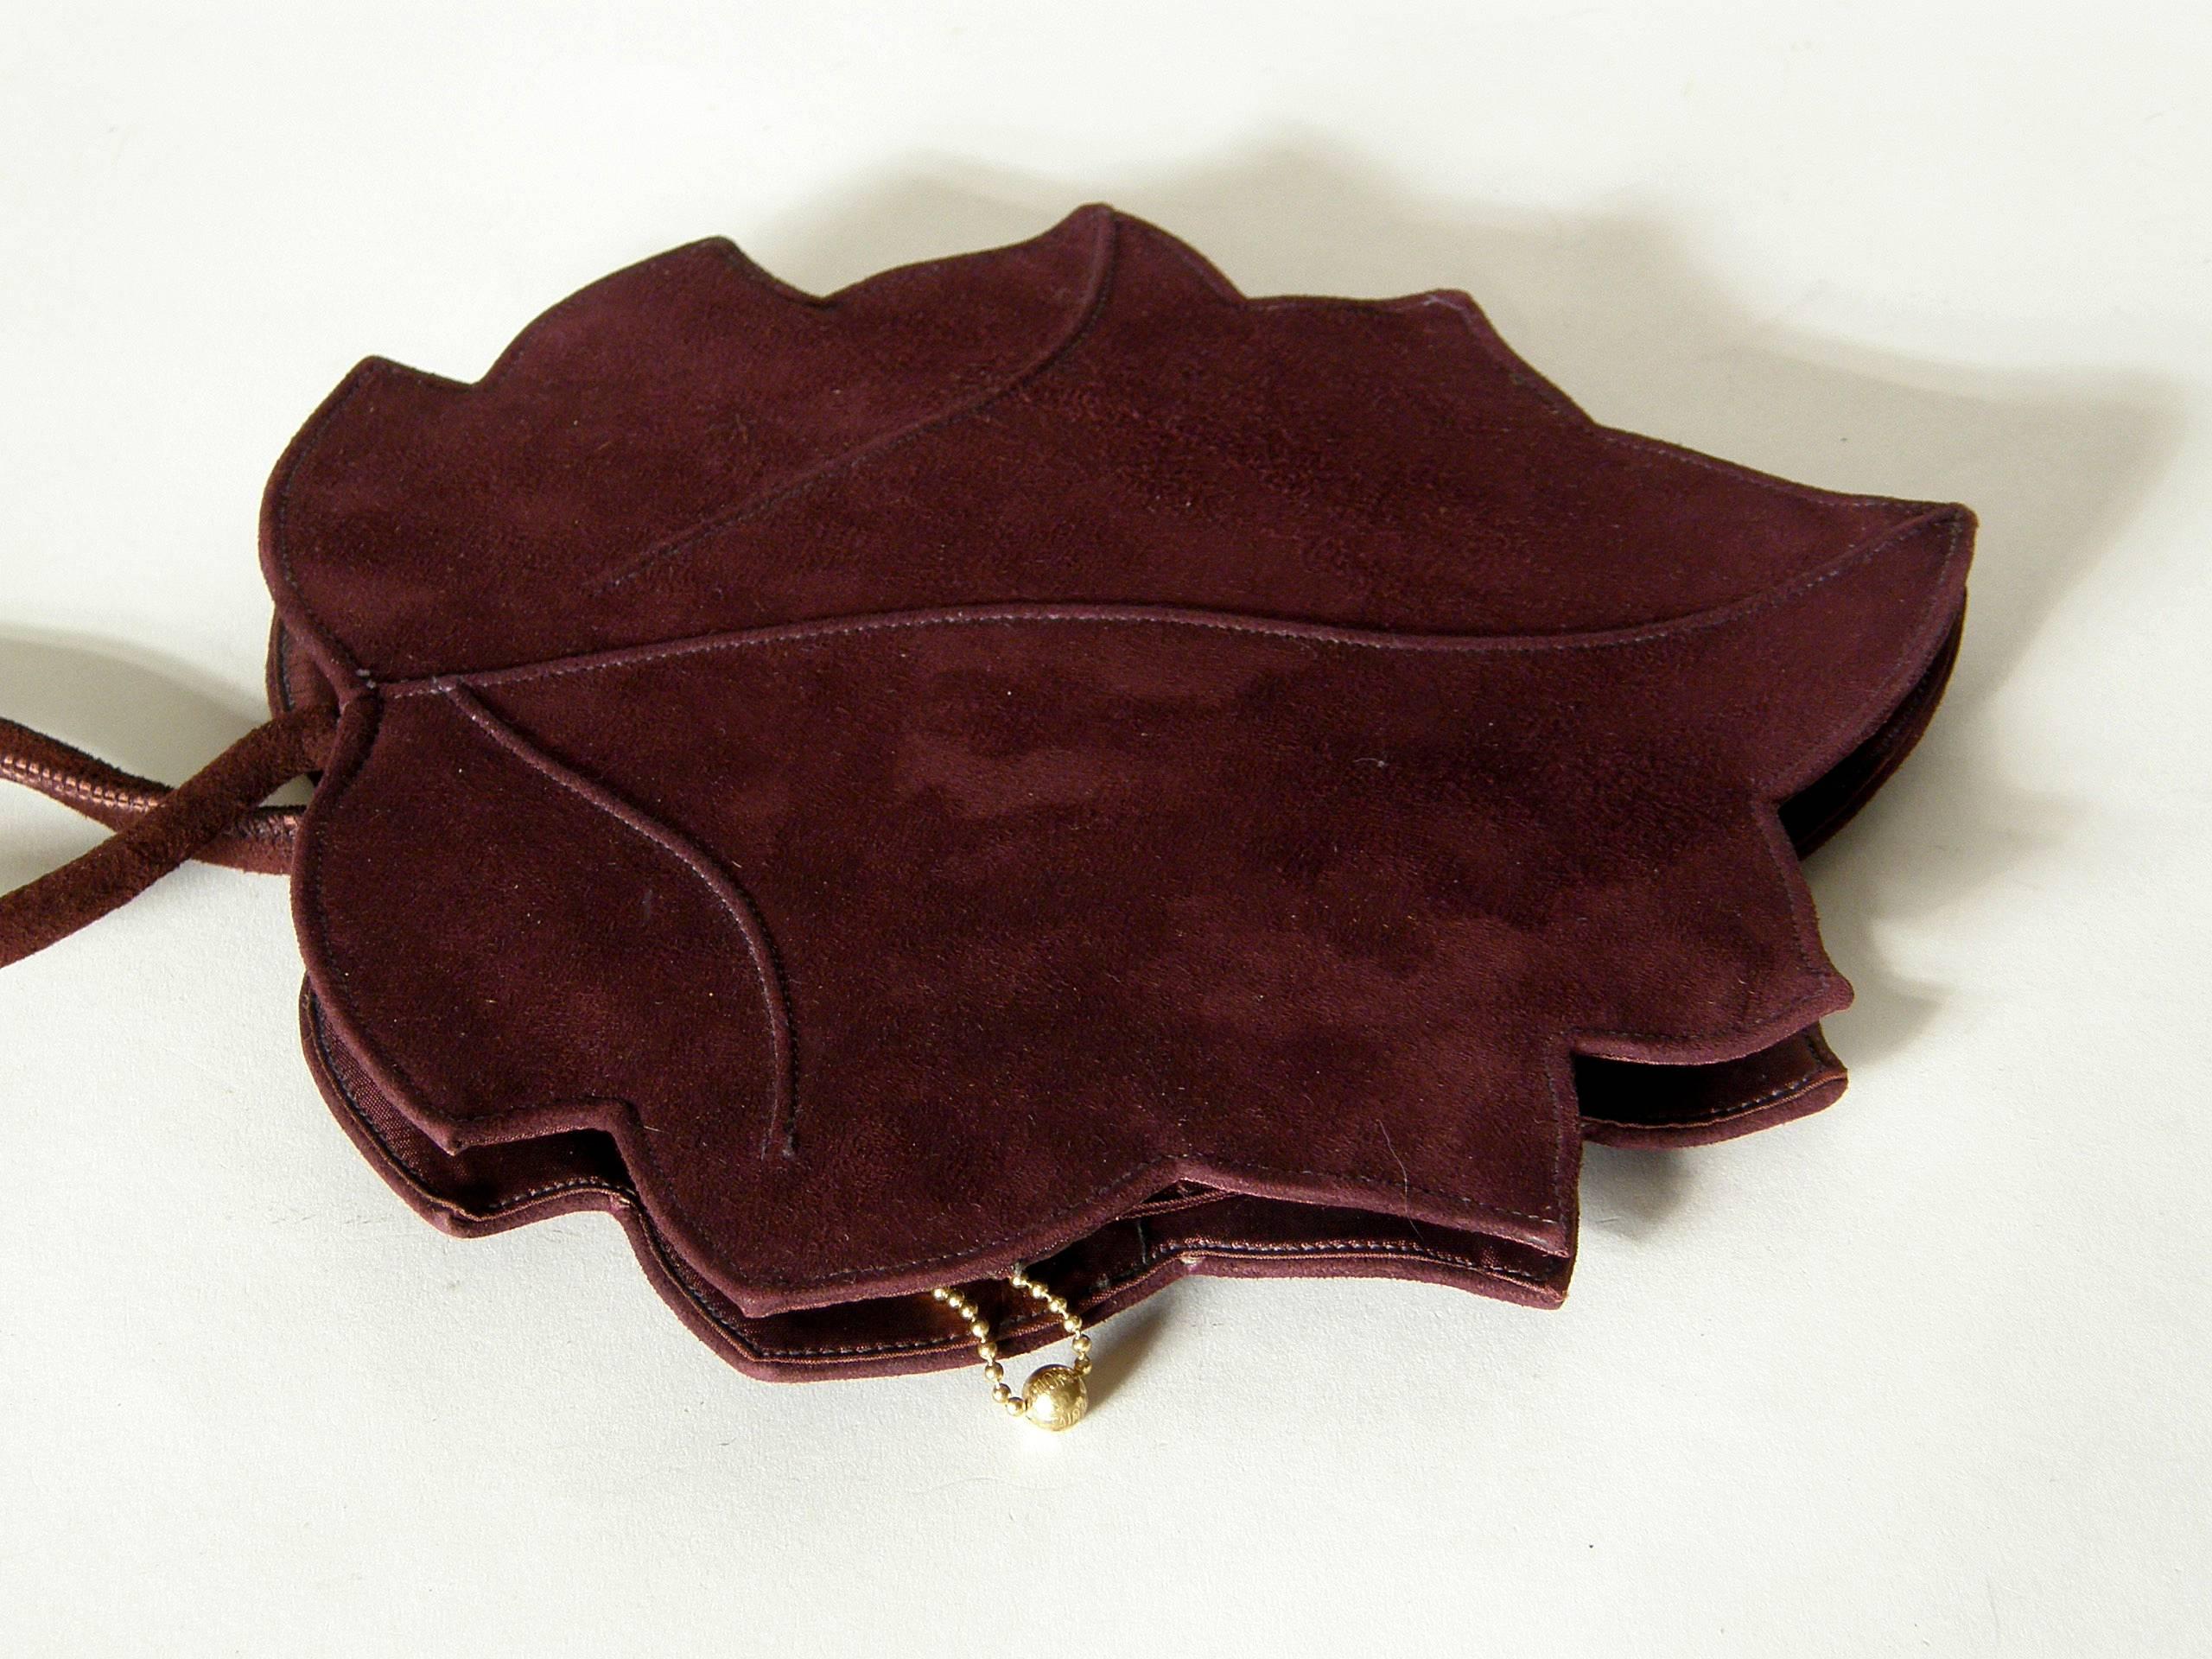 leaf shaped purse